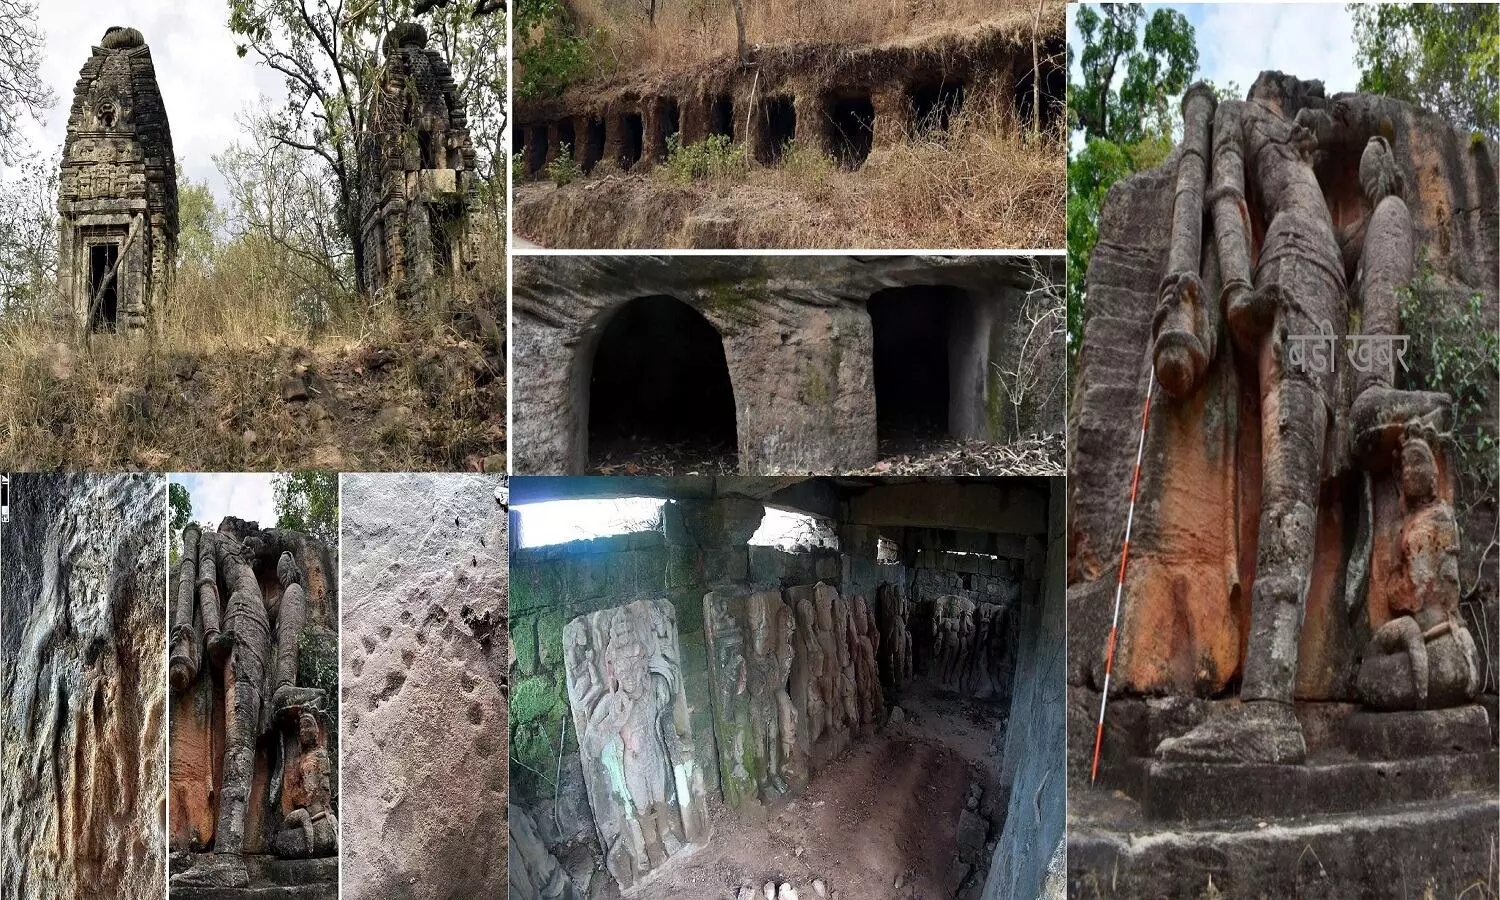 बांधवगढ़ में मिली दो हज़ार साल पुरानी 26 मानव निर्मित गुफाएं, बौद्ध और हिन्दू देवताओं की प्राचीन प्रतिमाएं मिलीं